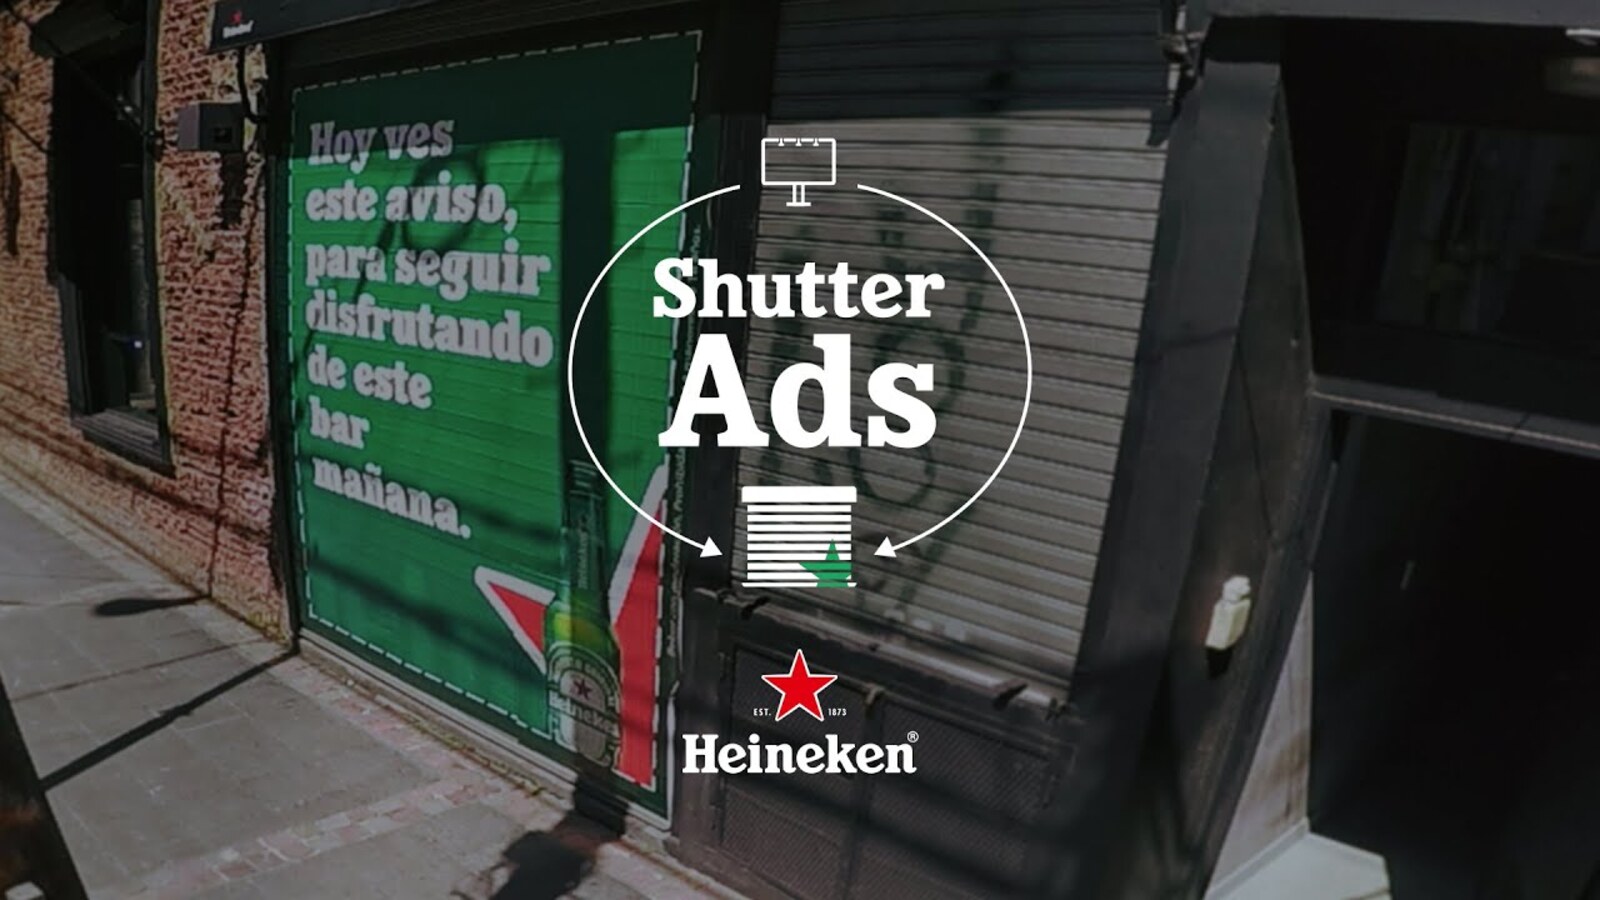 Heineken “Shutter Ads”